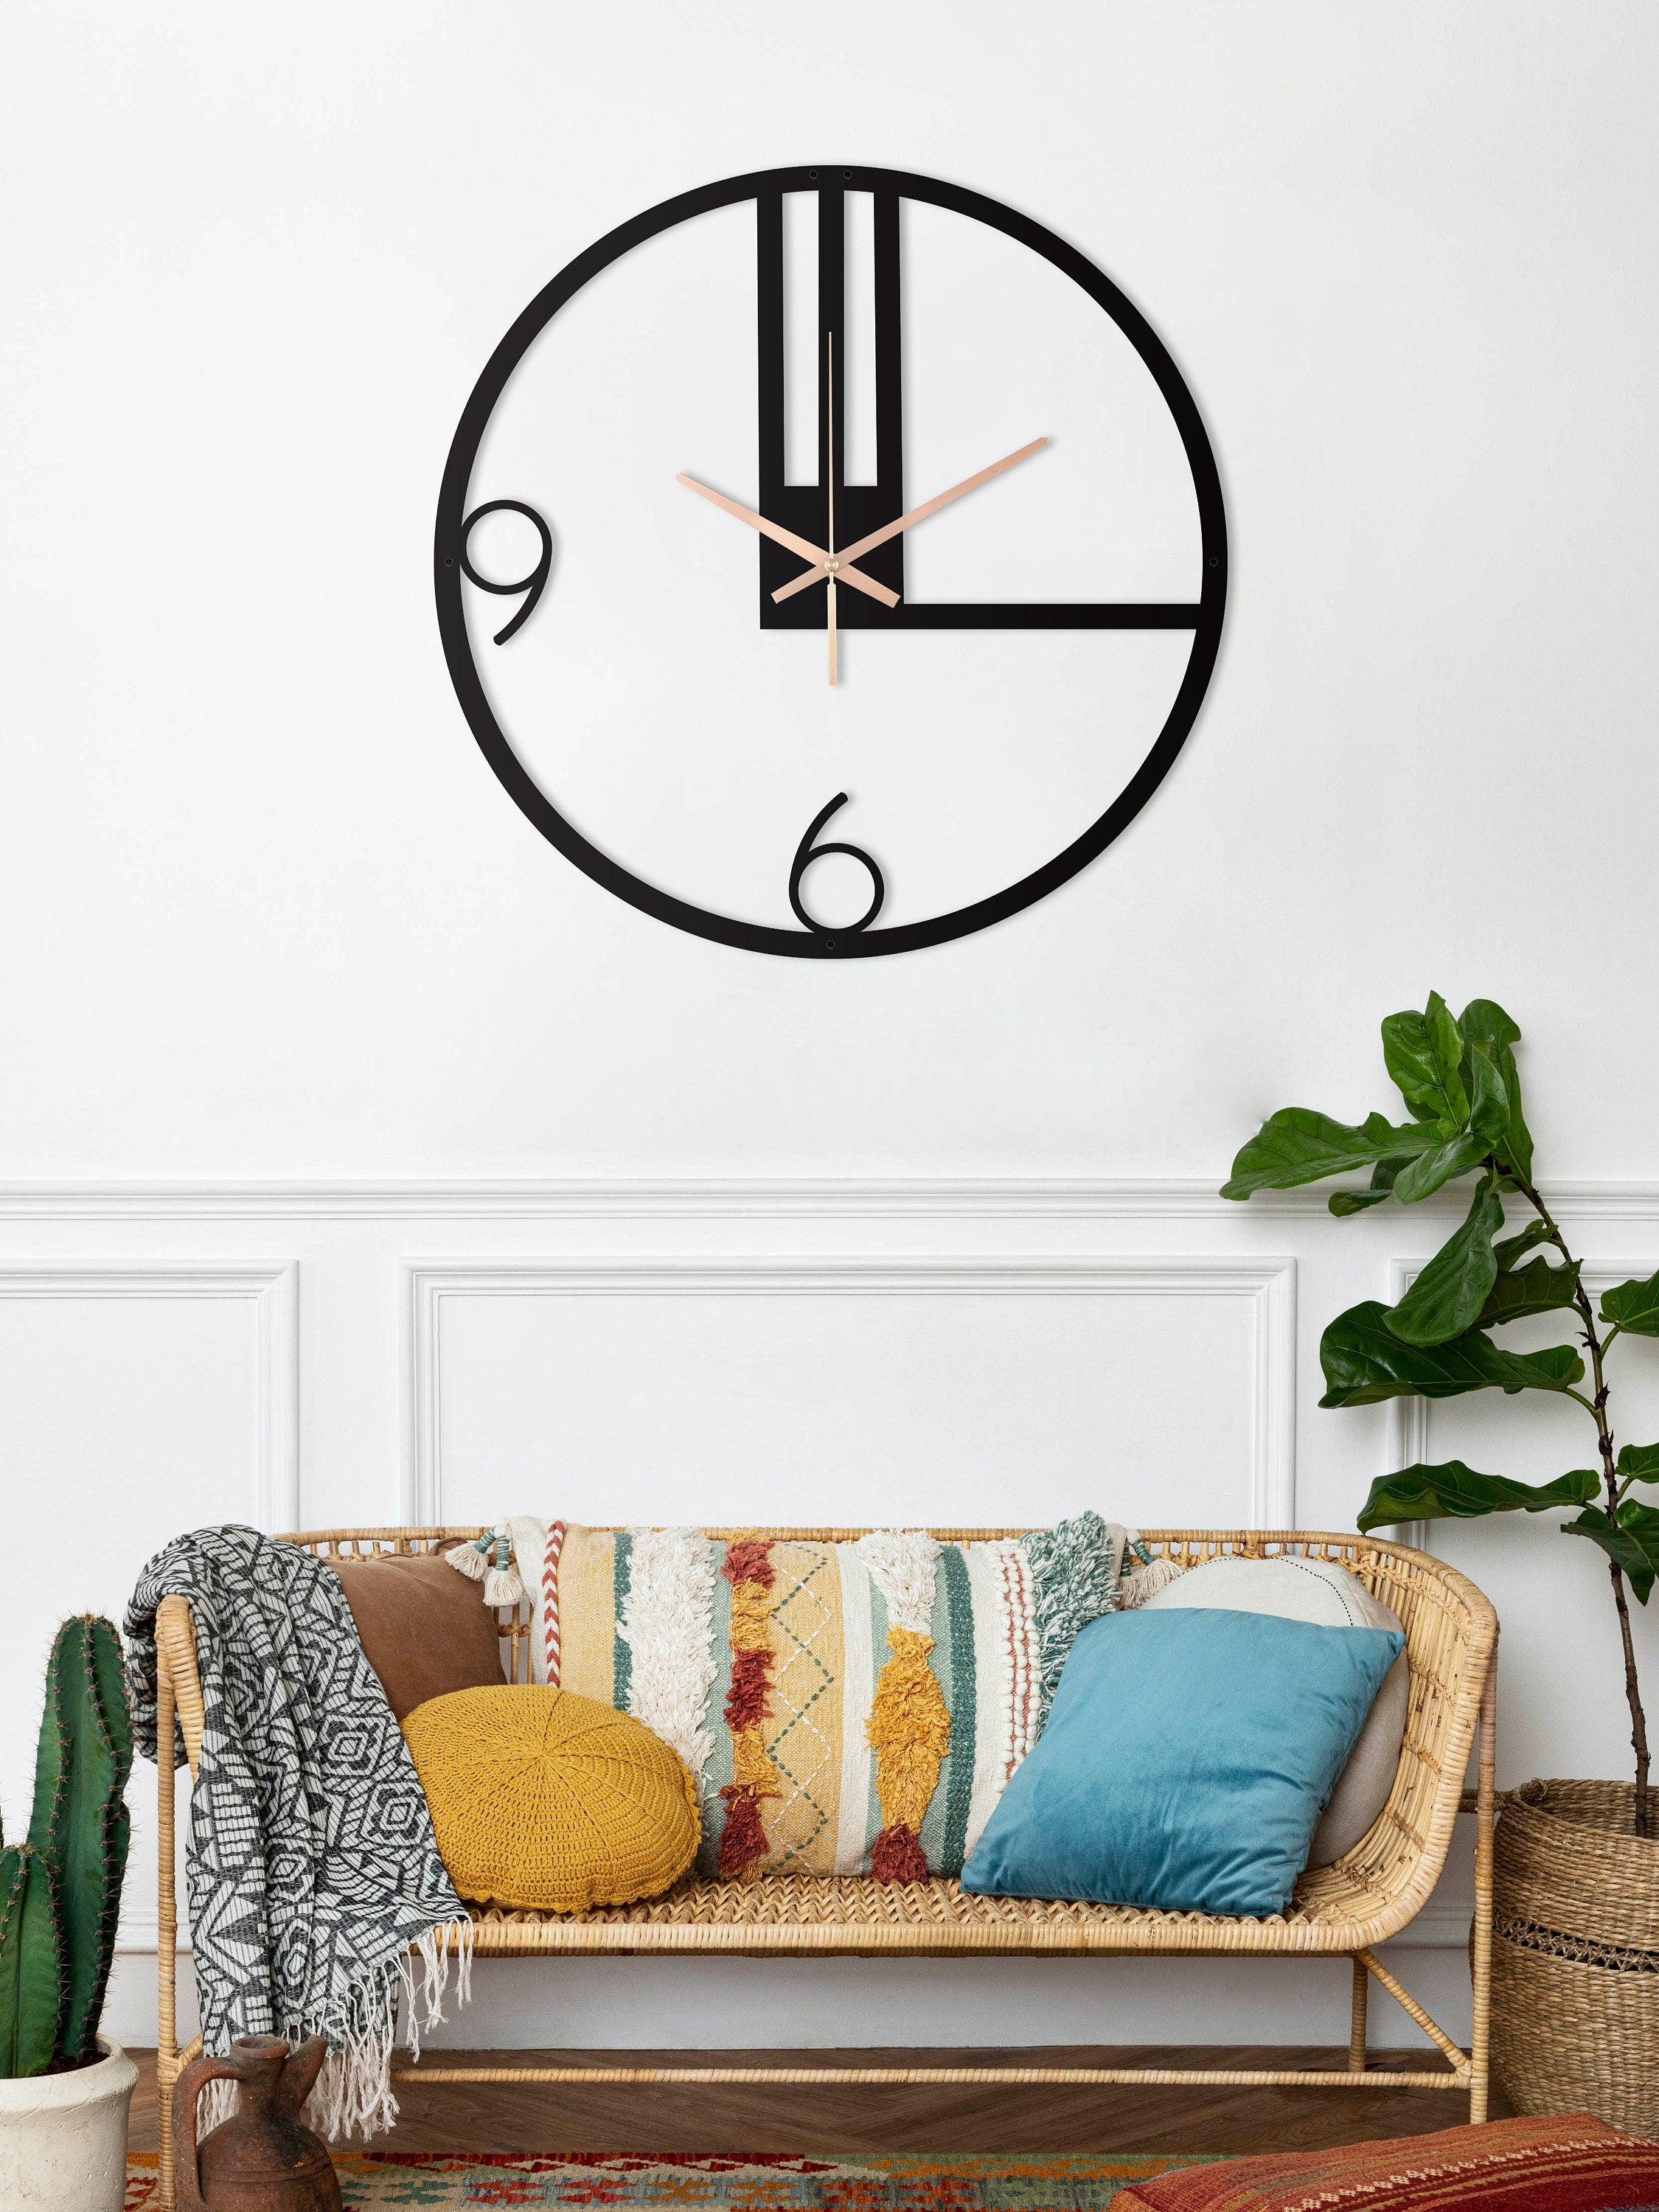 Minimalist Clock, Large Modern Wall Clock, Black Small Wall Clock Silent Wall Clock, Unique Wall Clock, Minimal Wall Clock, Clocks For Wall